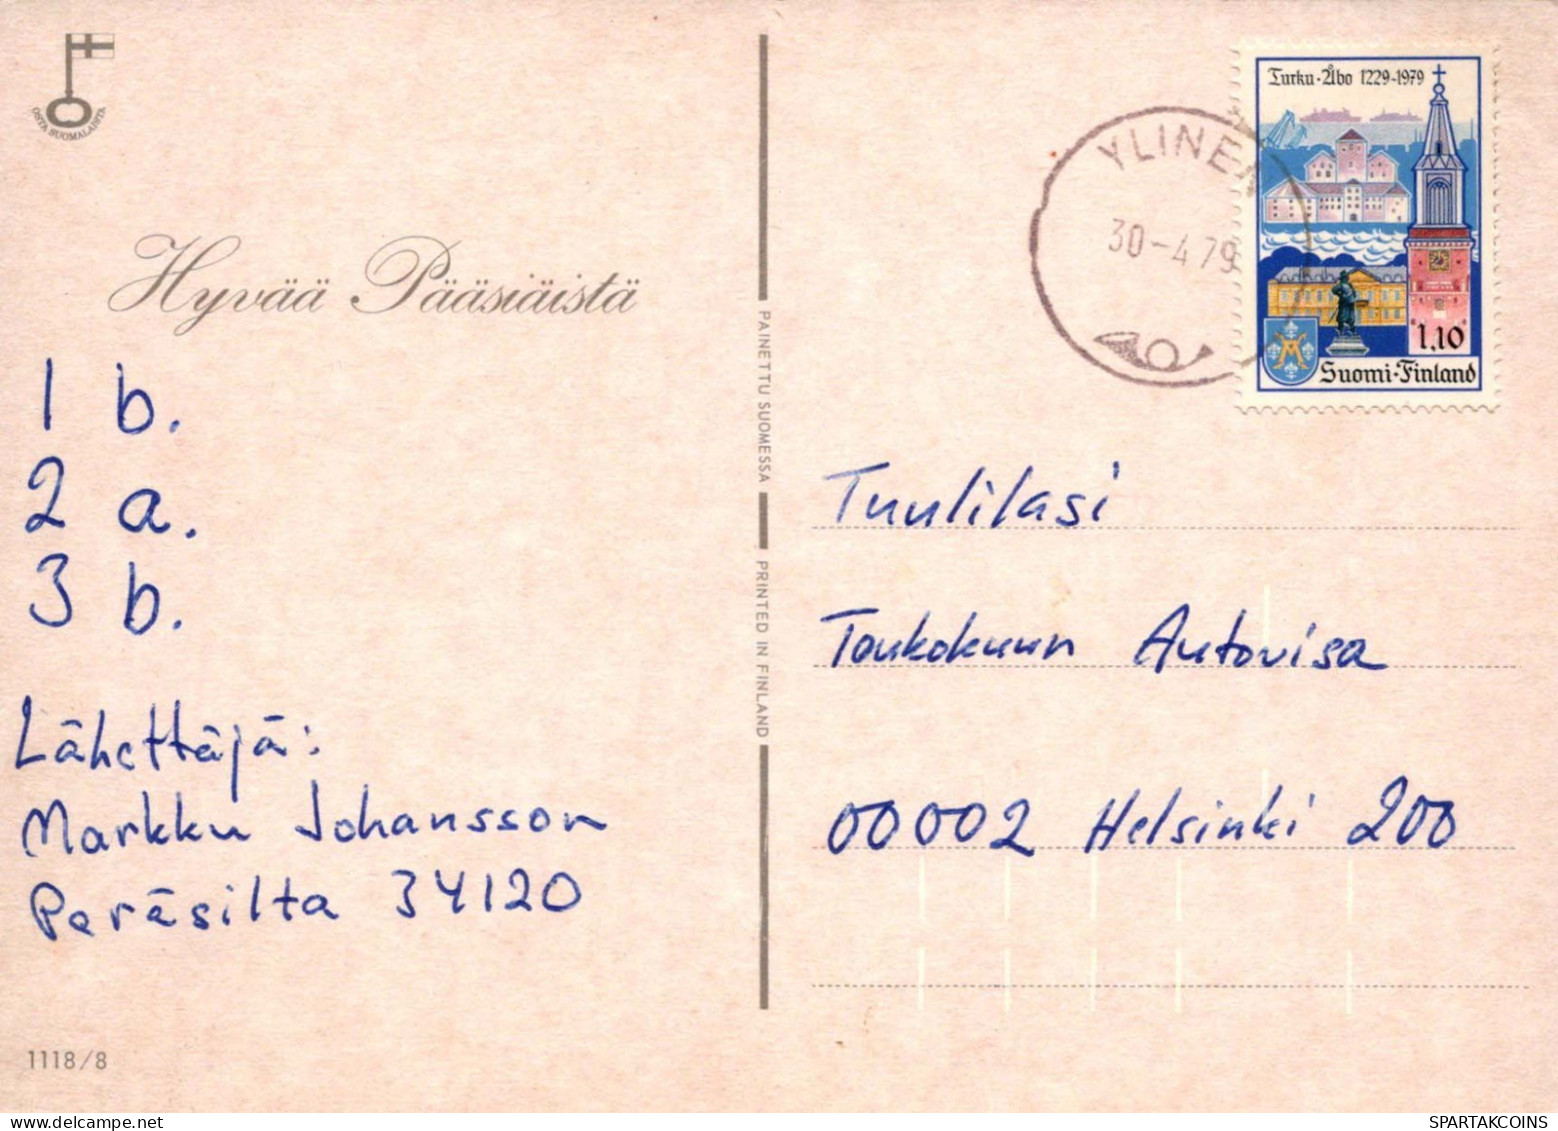 PÂQUES POULET ŒUF Vintage Carte Postale CPSM #PBO798.FR - Easter